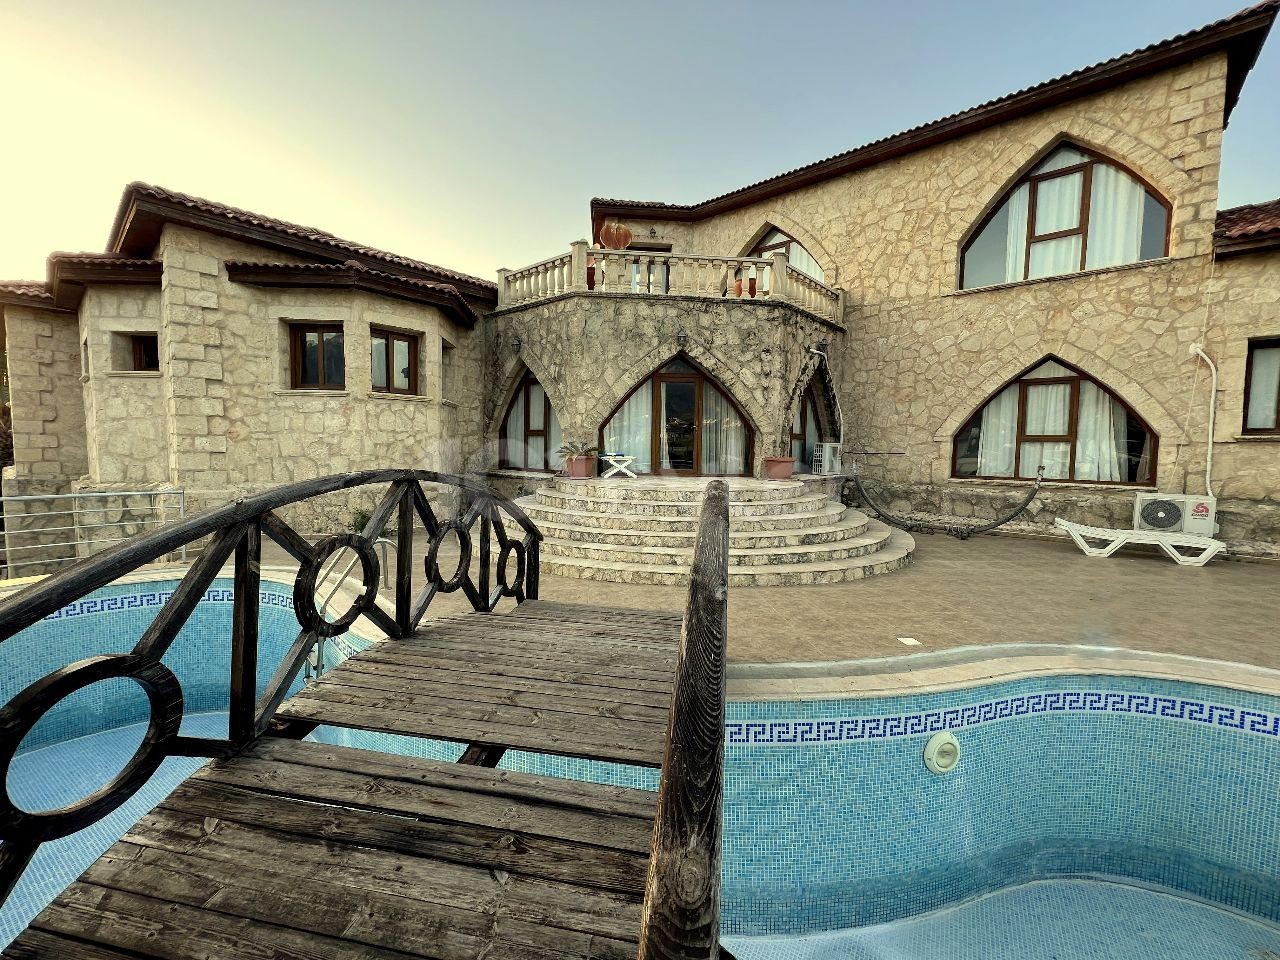 Girne, Karşıyaka'da muhteşem taş ev. 4 yatak odalı, çalışma odası , özel yüzme havuzu ve kapalı garajı mevcut. mükemmel gün batımını izleyebileceğiniz teras. Denize sadece 200m mesafede. 05338403555